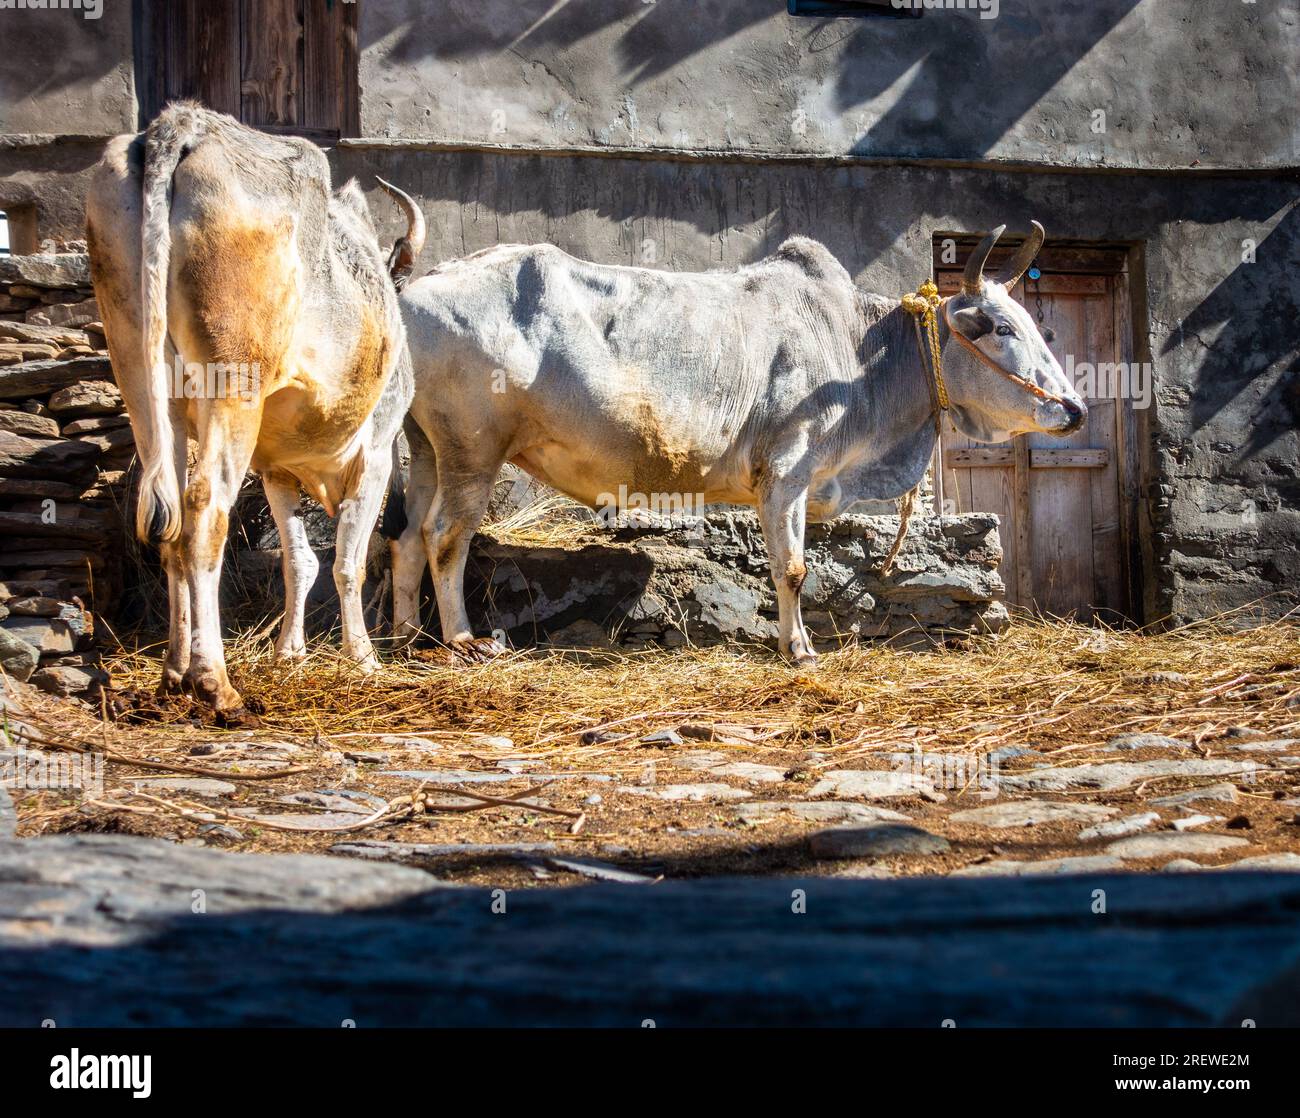 Himalaya Weiße Badri Kühe und Bullen im natürlichen Lebensraum, Uttarakhand, ländliches Dorf. Authentischer Einblick in das ländliche Leben und die einheimische Schönheit der Rinder. Stockfoto